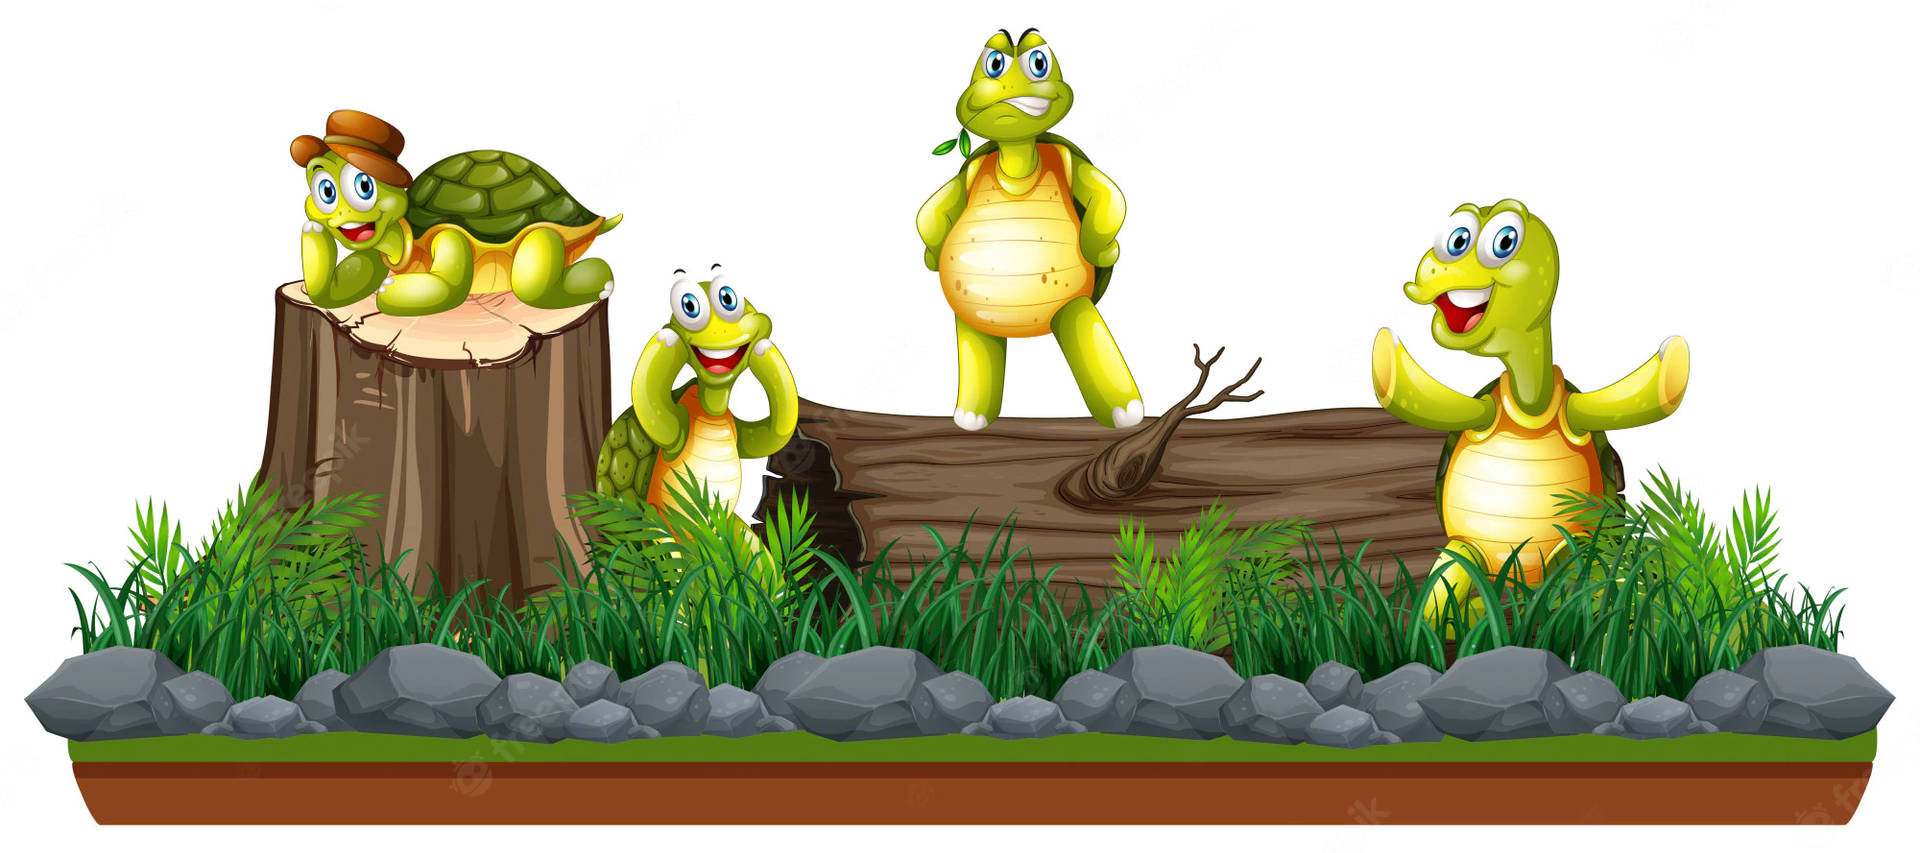 Cartoonschildkröten Auf Einem Baumstamm Wallpaper